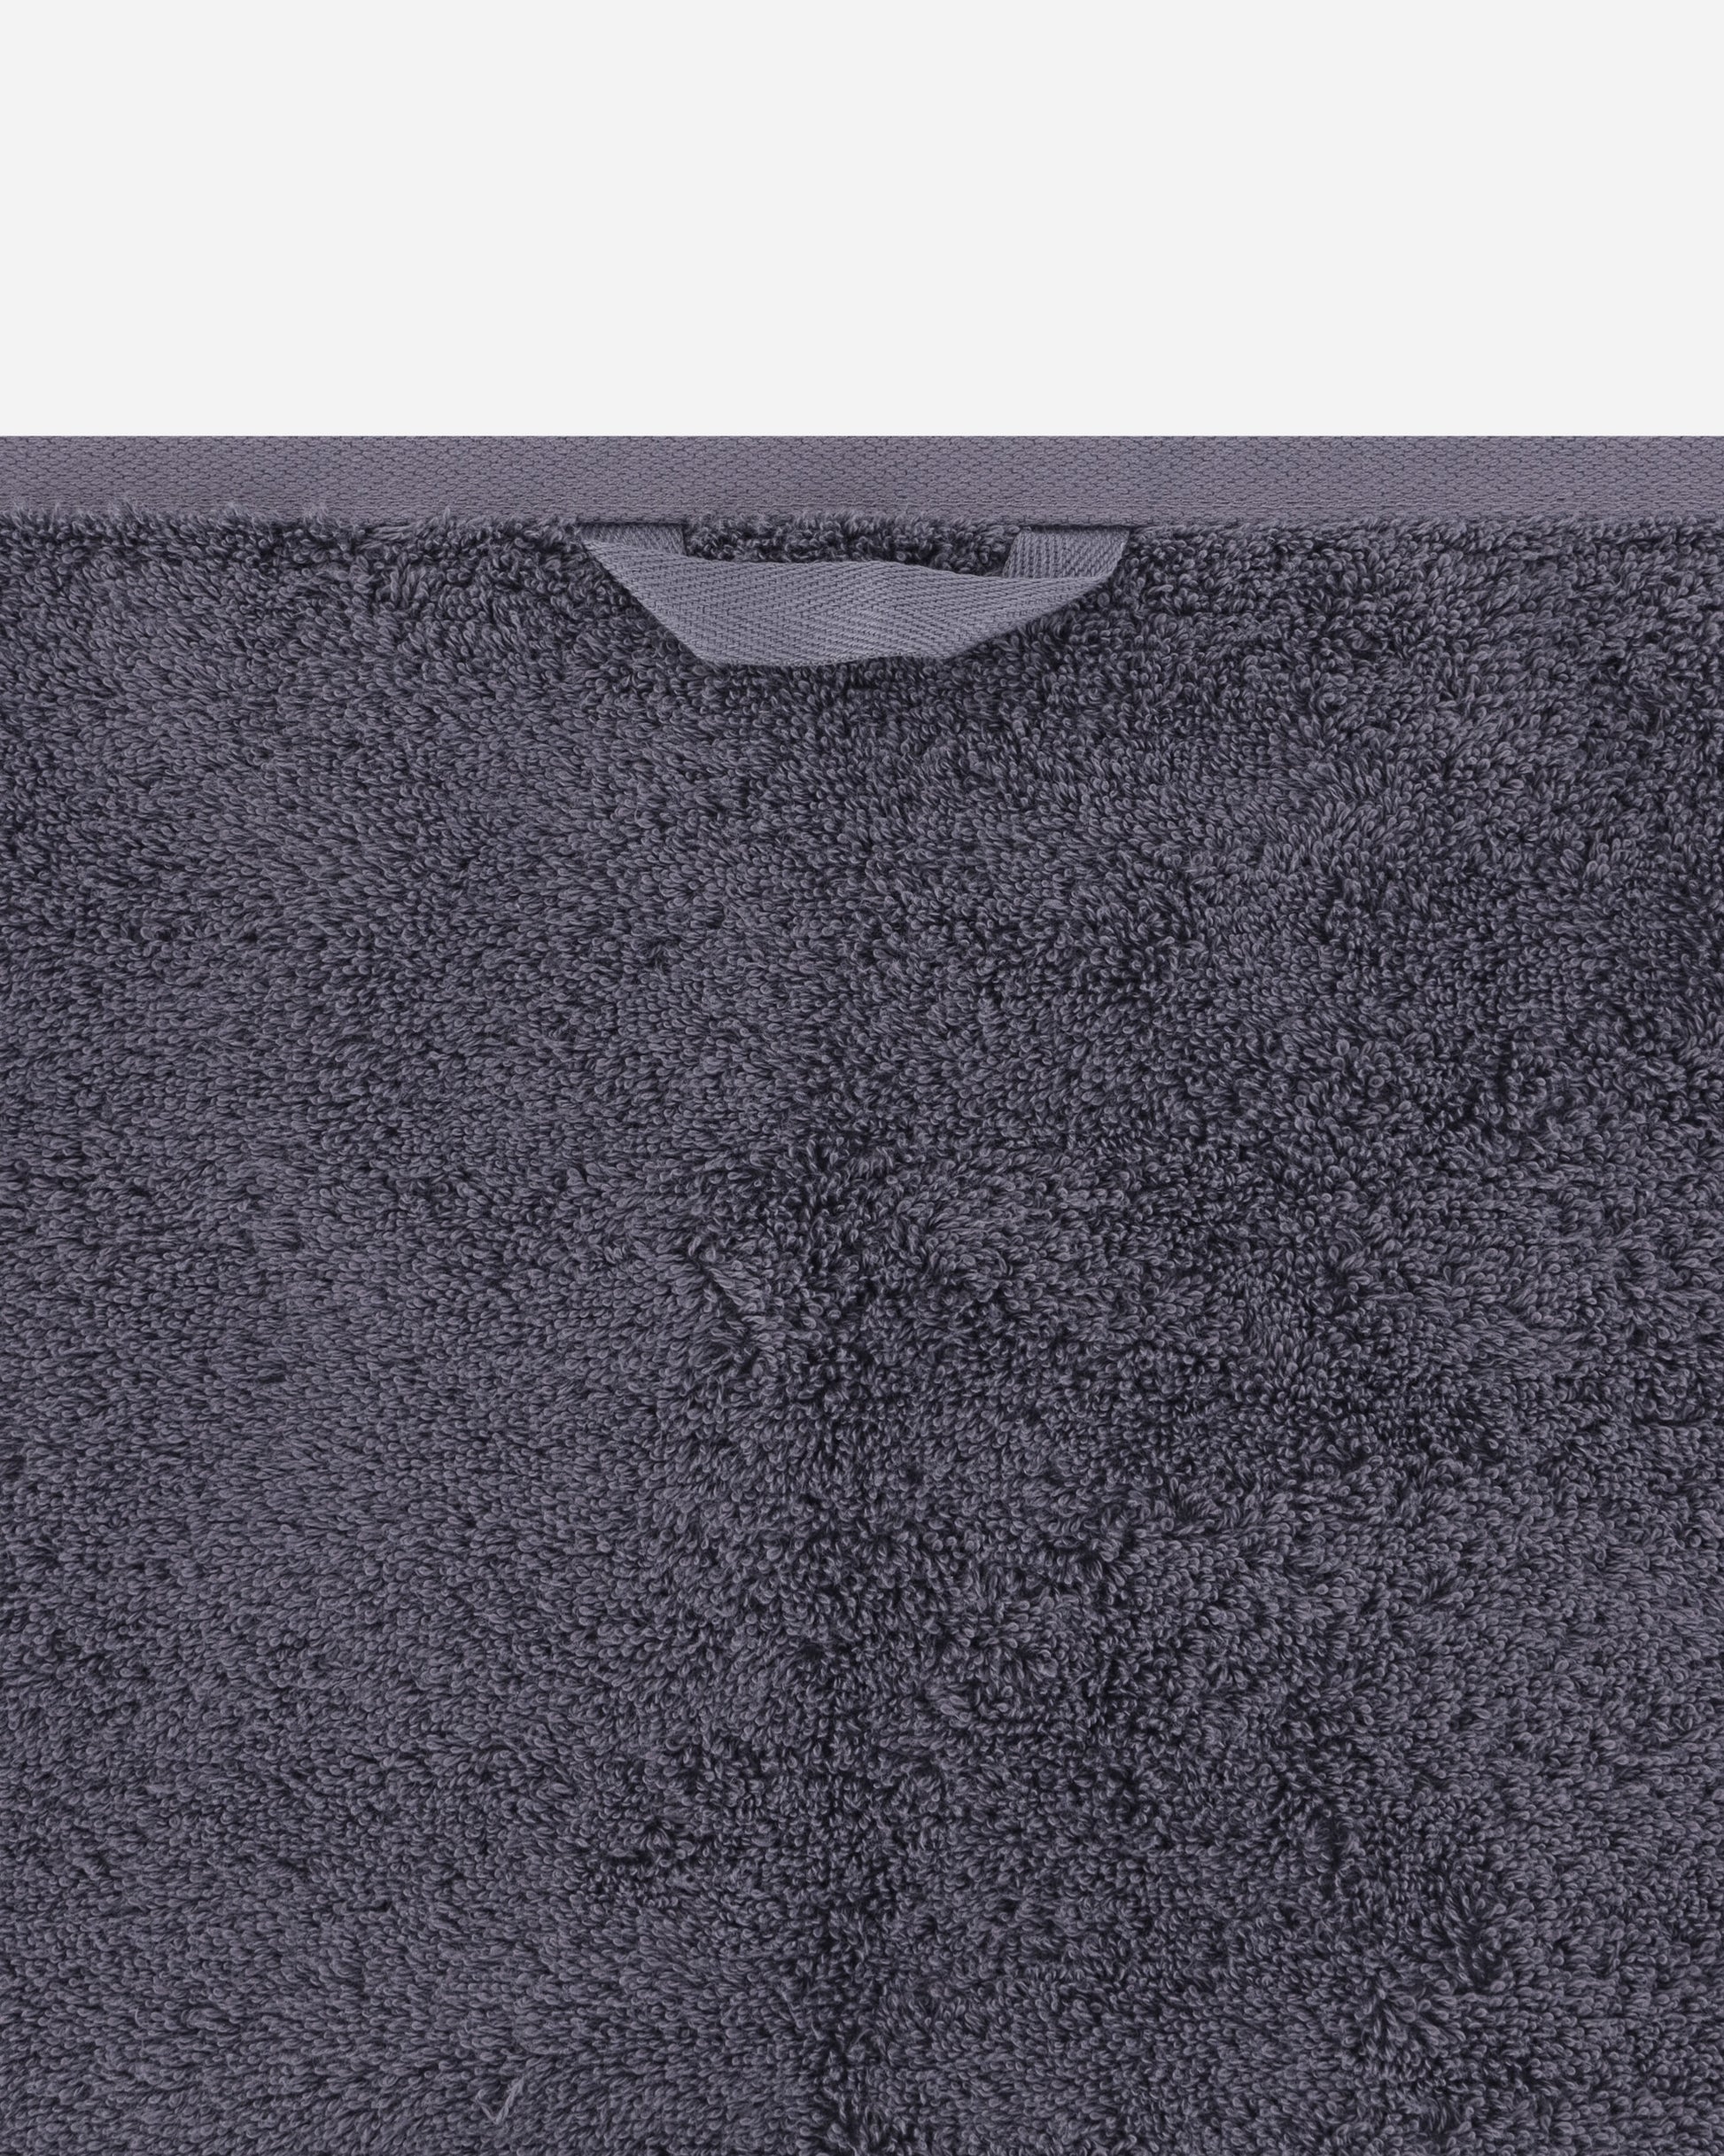 Tekla Terry Towel - Solid 70X140 Charcoal Grey Textile Bath Towels TT-70x140 CG